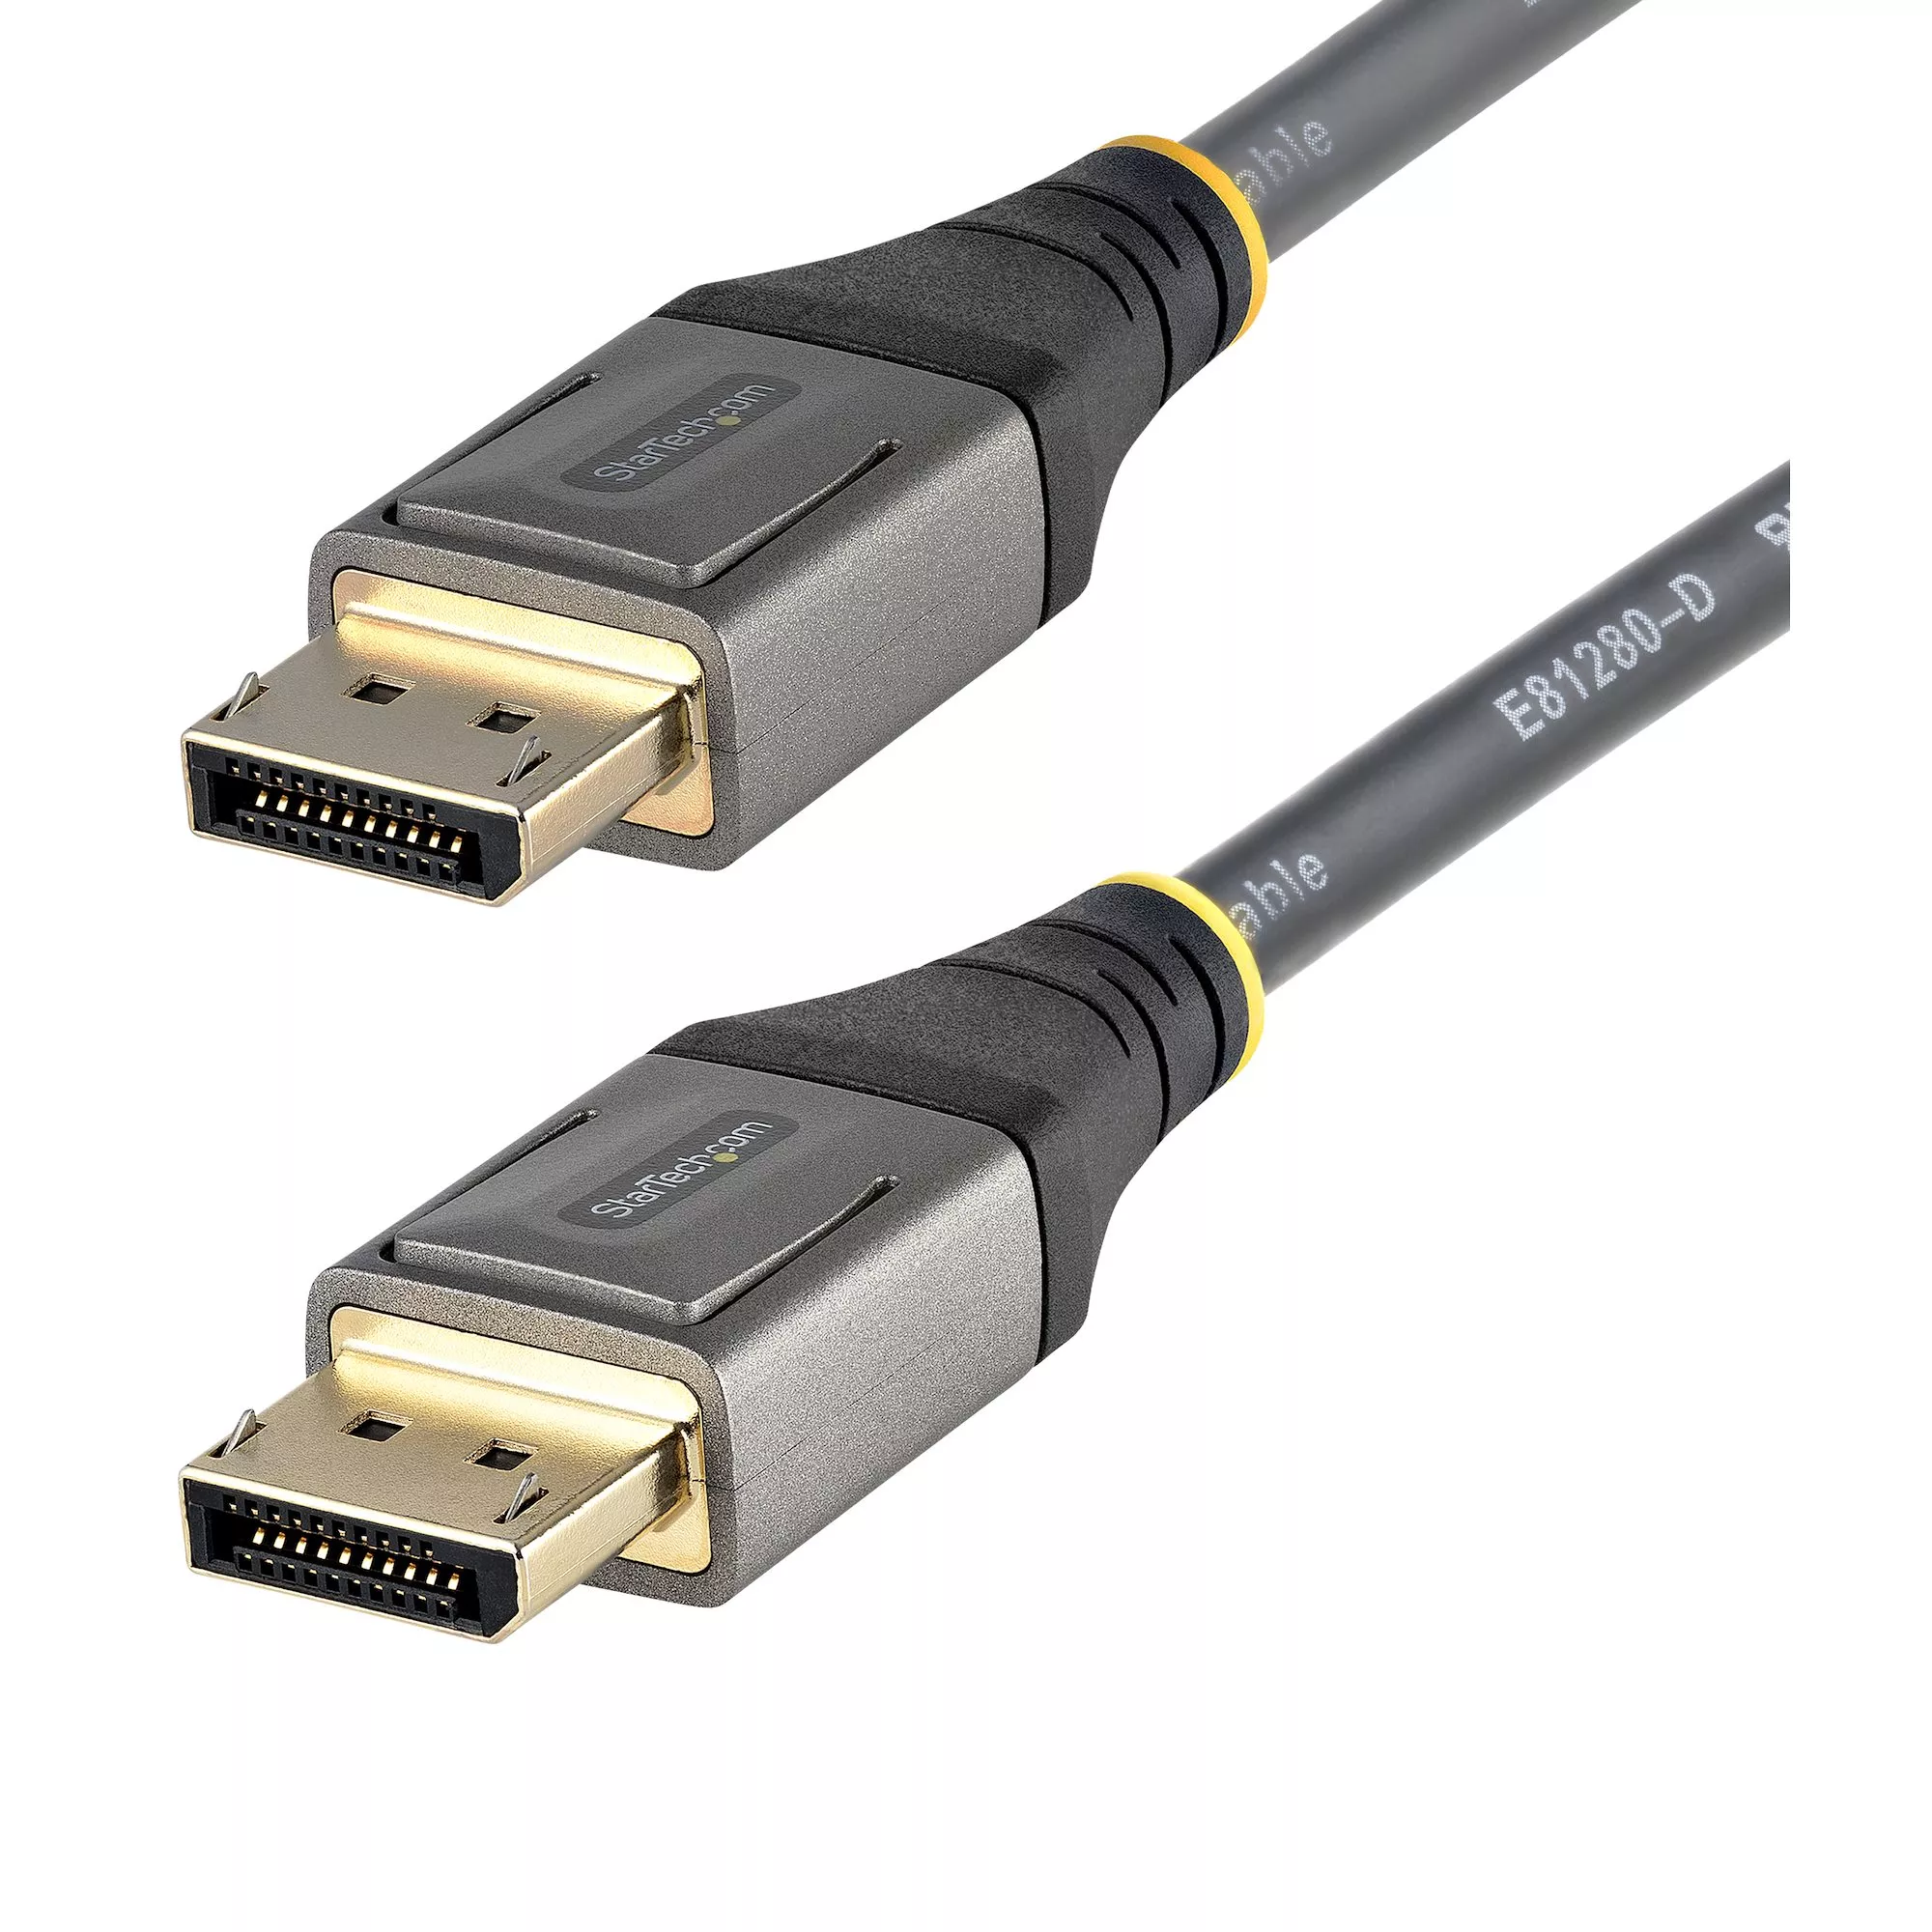 Achat StarTech.com Câble DisplayPort 1.4 Certifié VESA 5m - 8K au meilleur prix